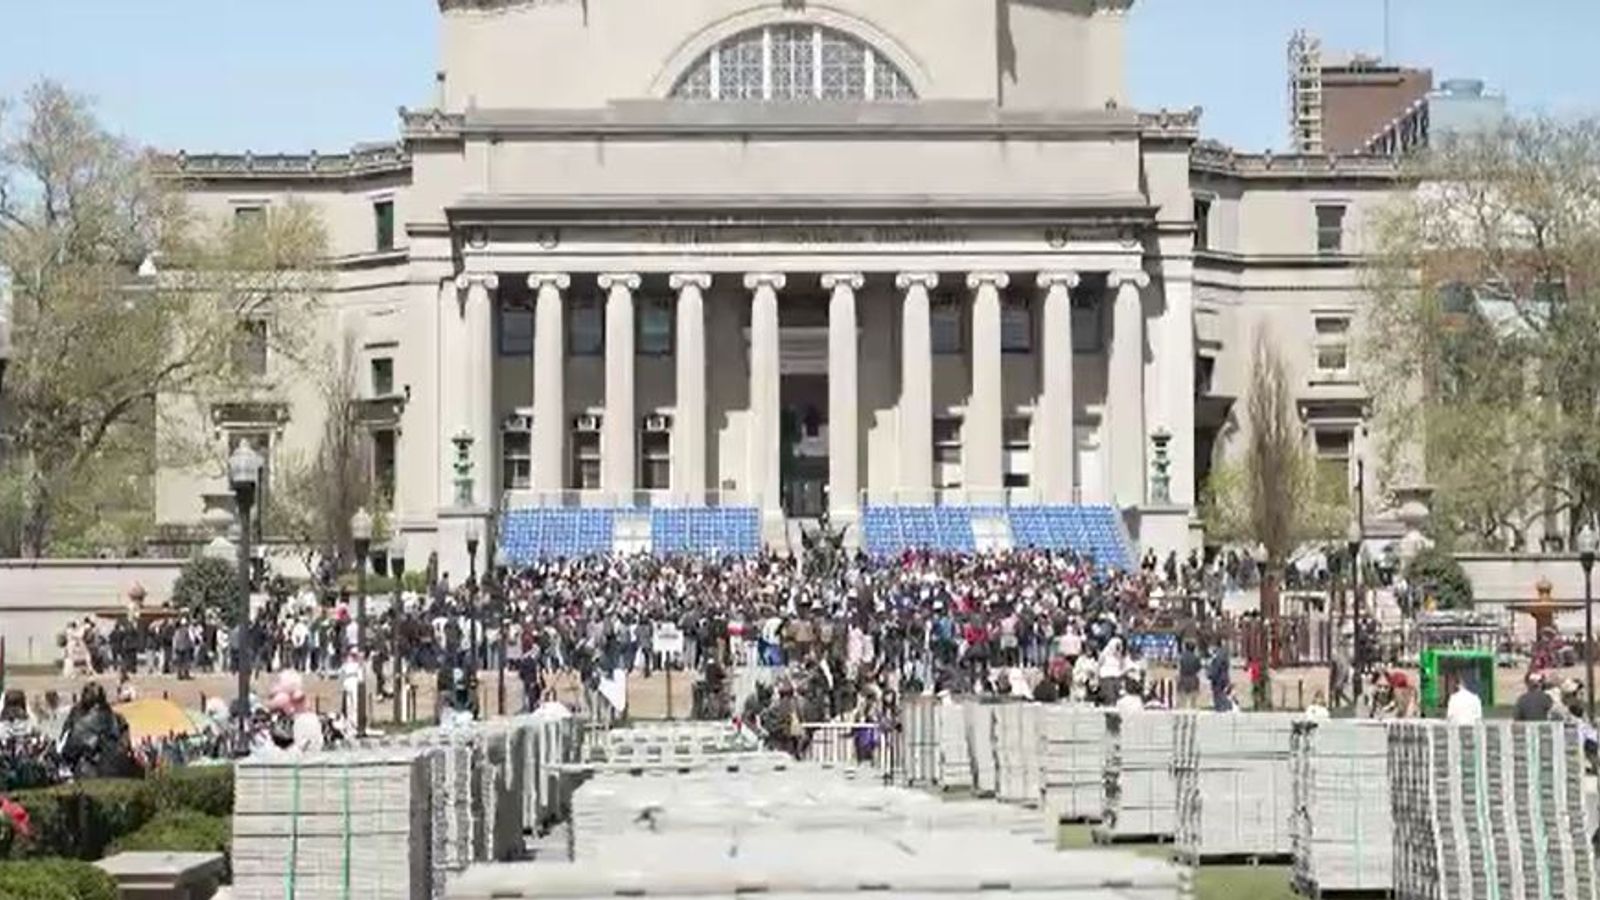 Les manifestations sur les campus universitaires résument un moment de division fébrile où les nuances sont trop souvent perdues |  Actualités américaines